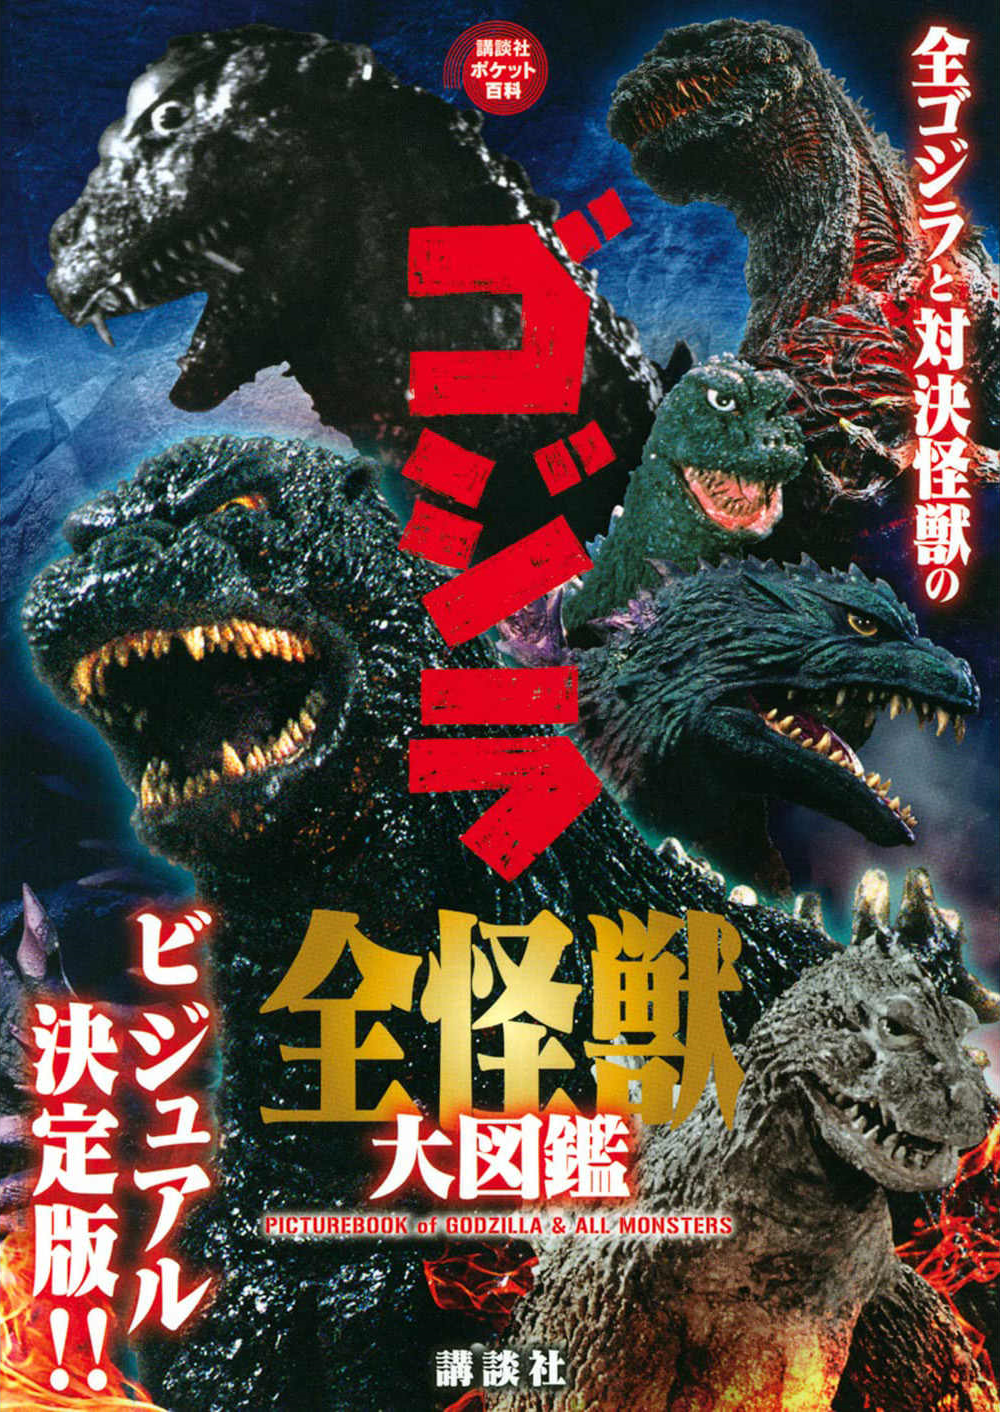 Picture Book of Godzilla & All Monsters | Wikizilla, the kaiju 